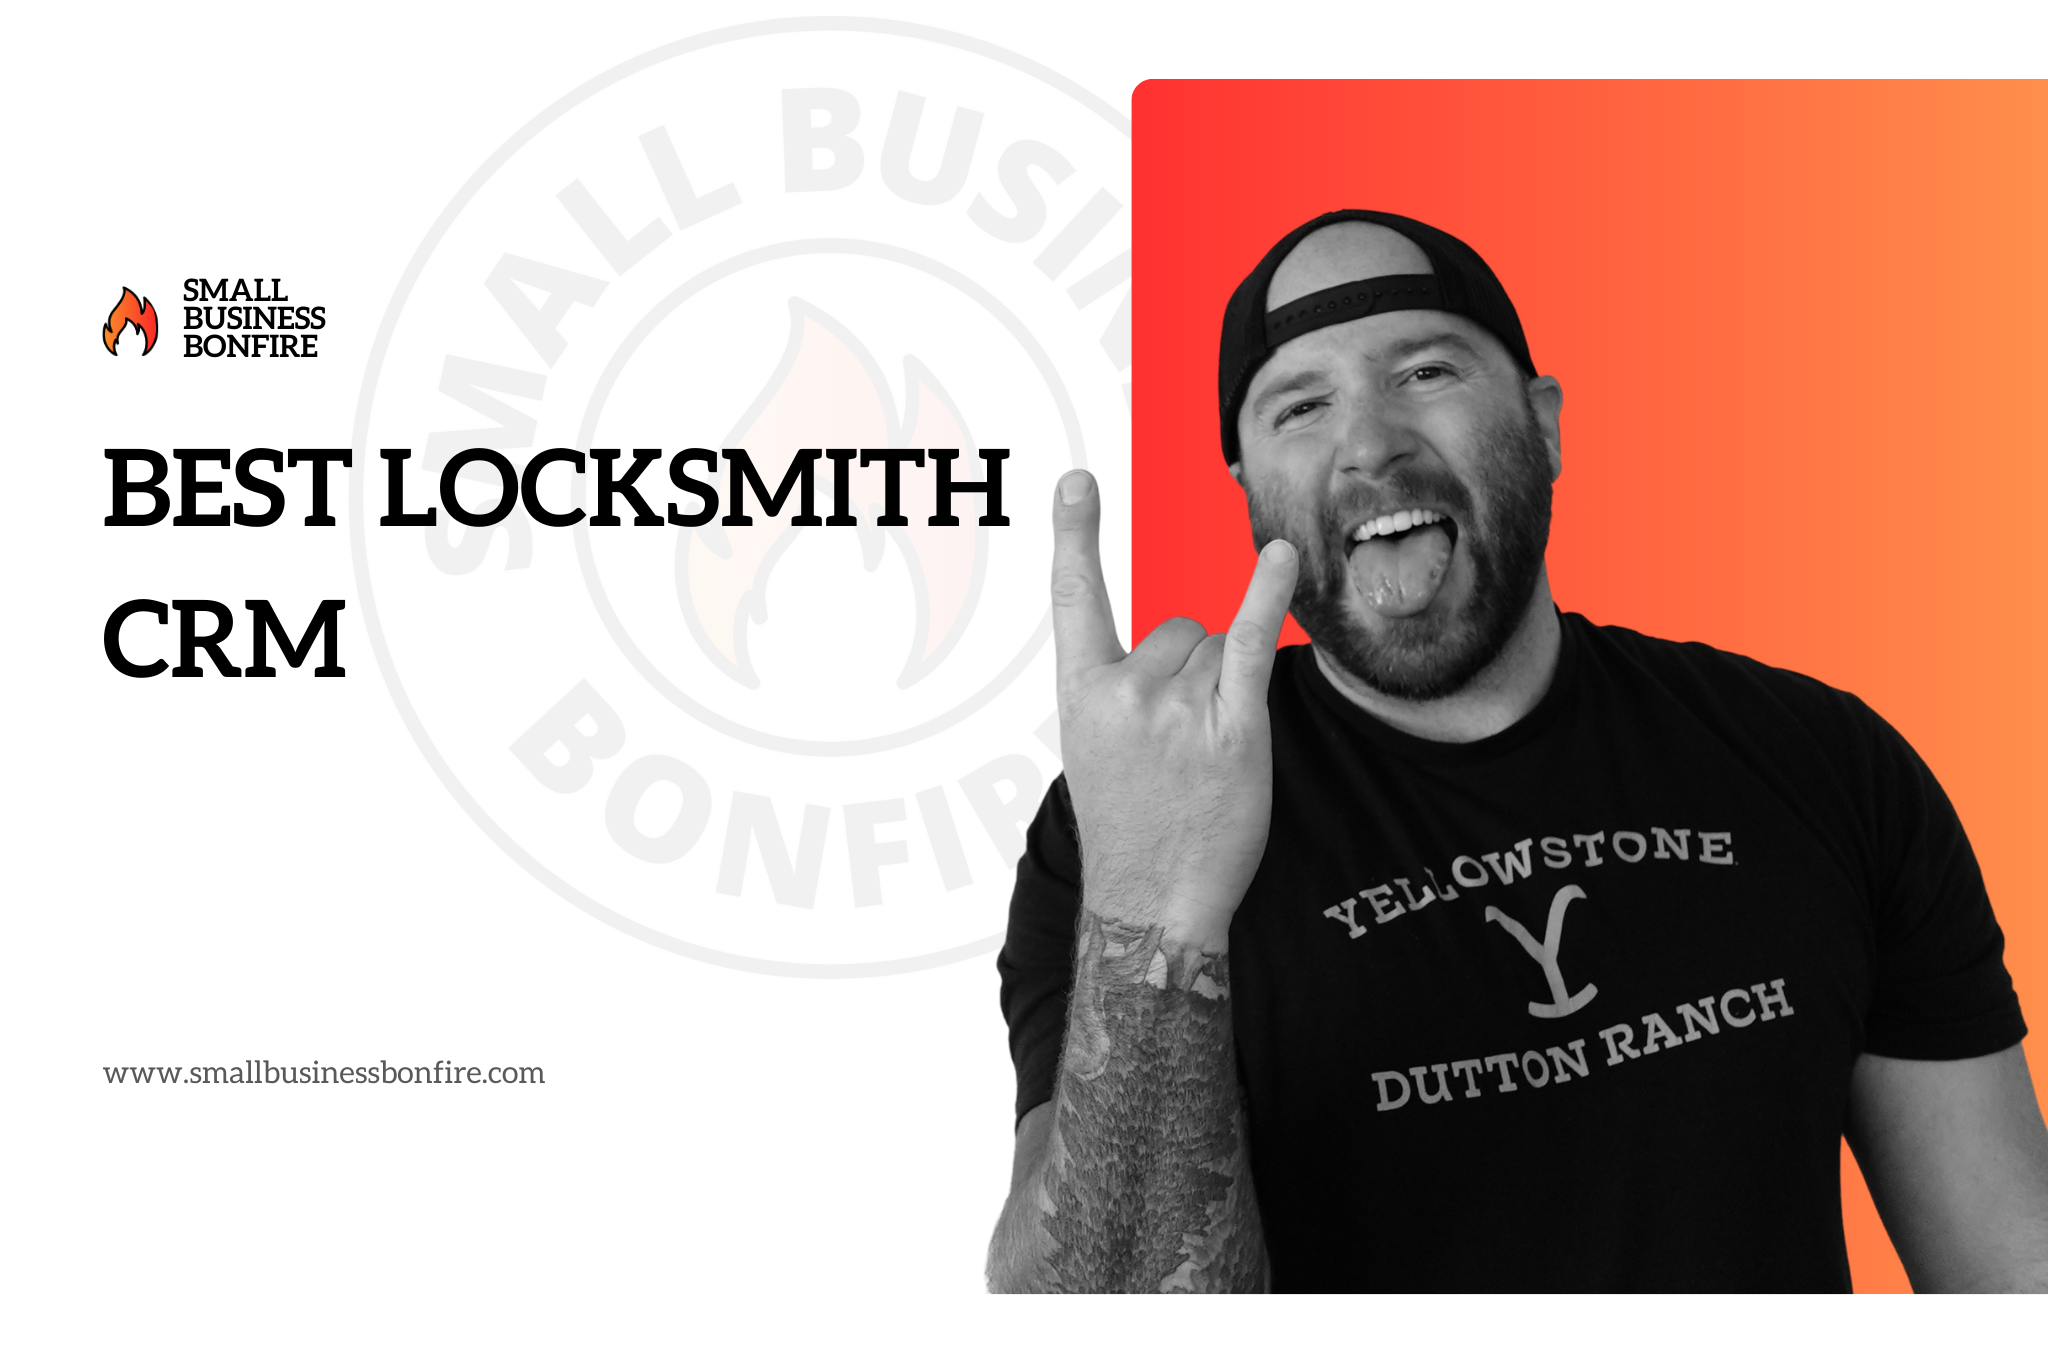 Best Locksmith CRM - Hero Image